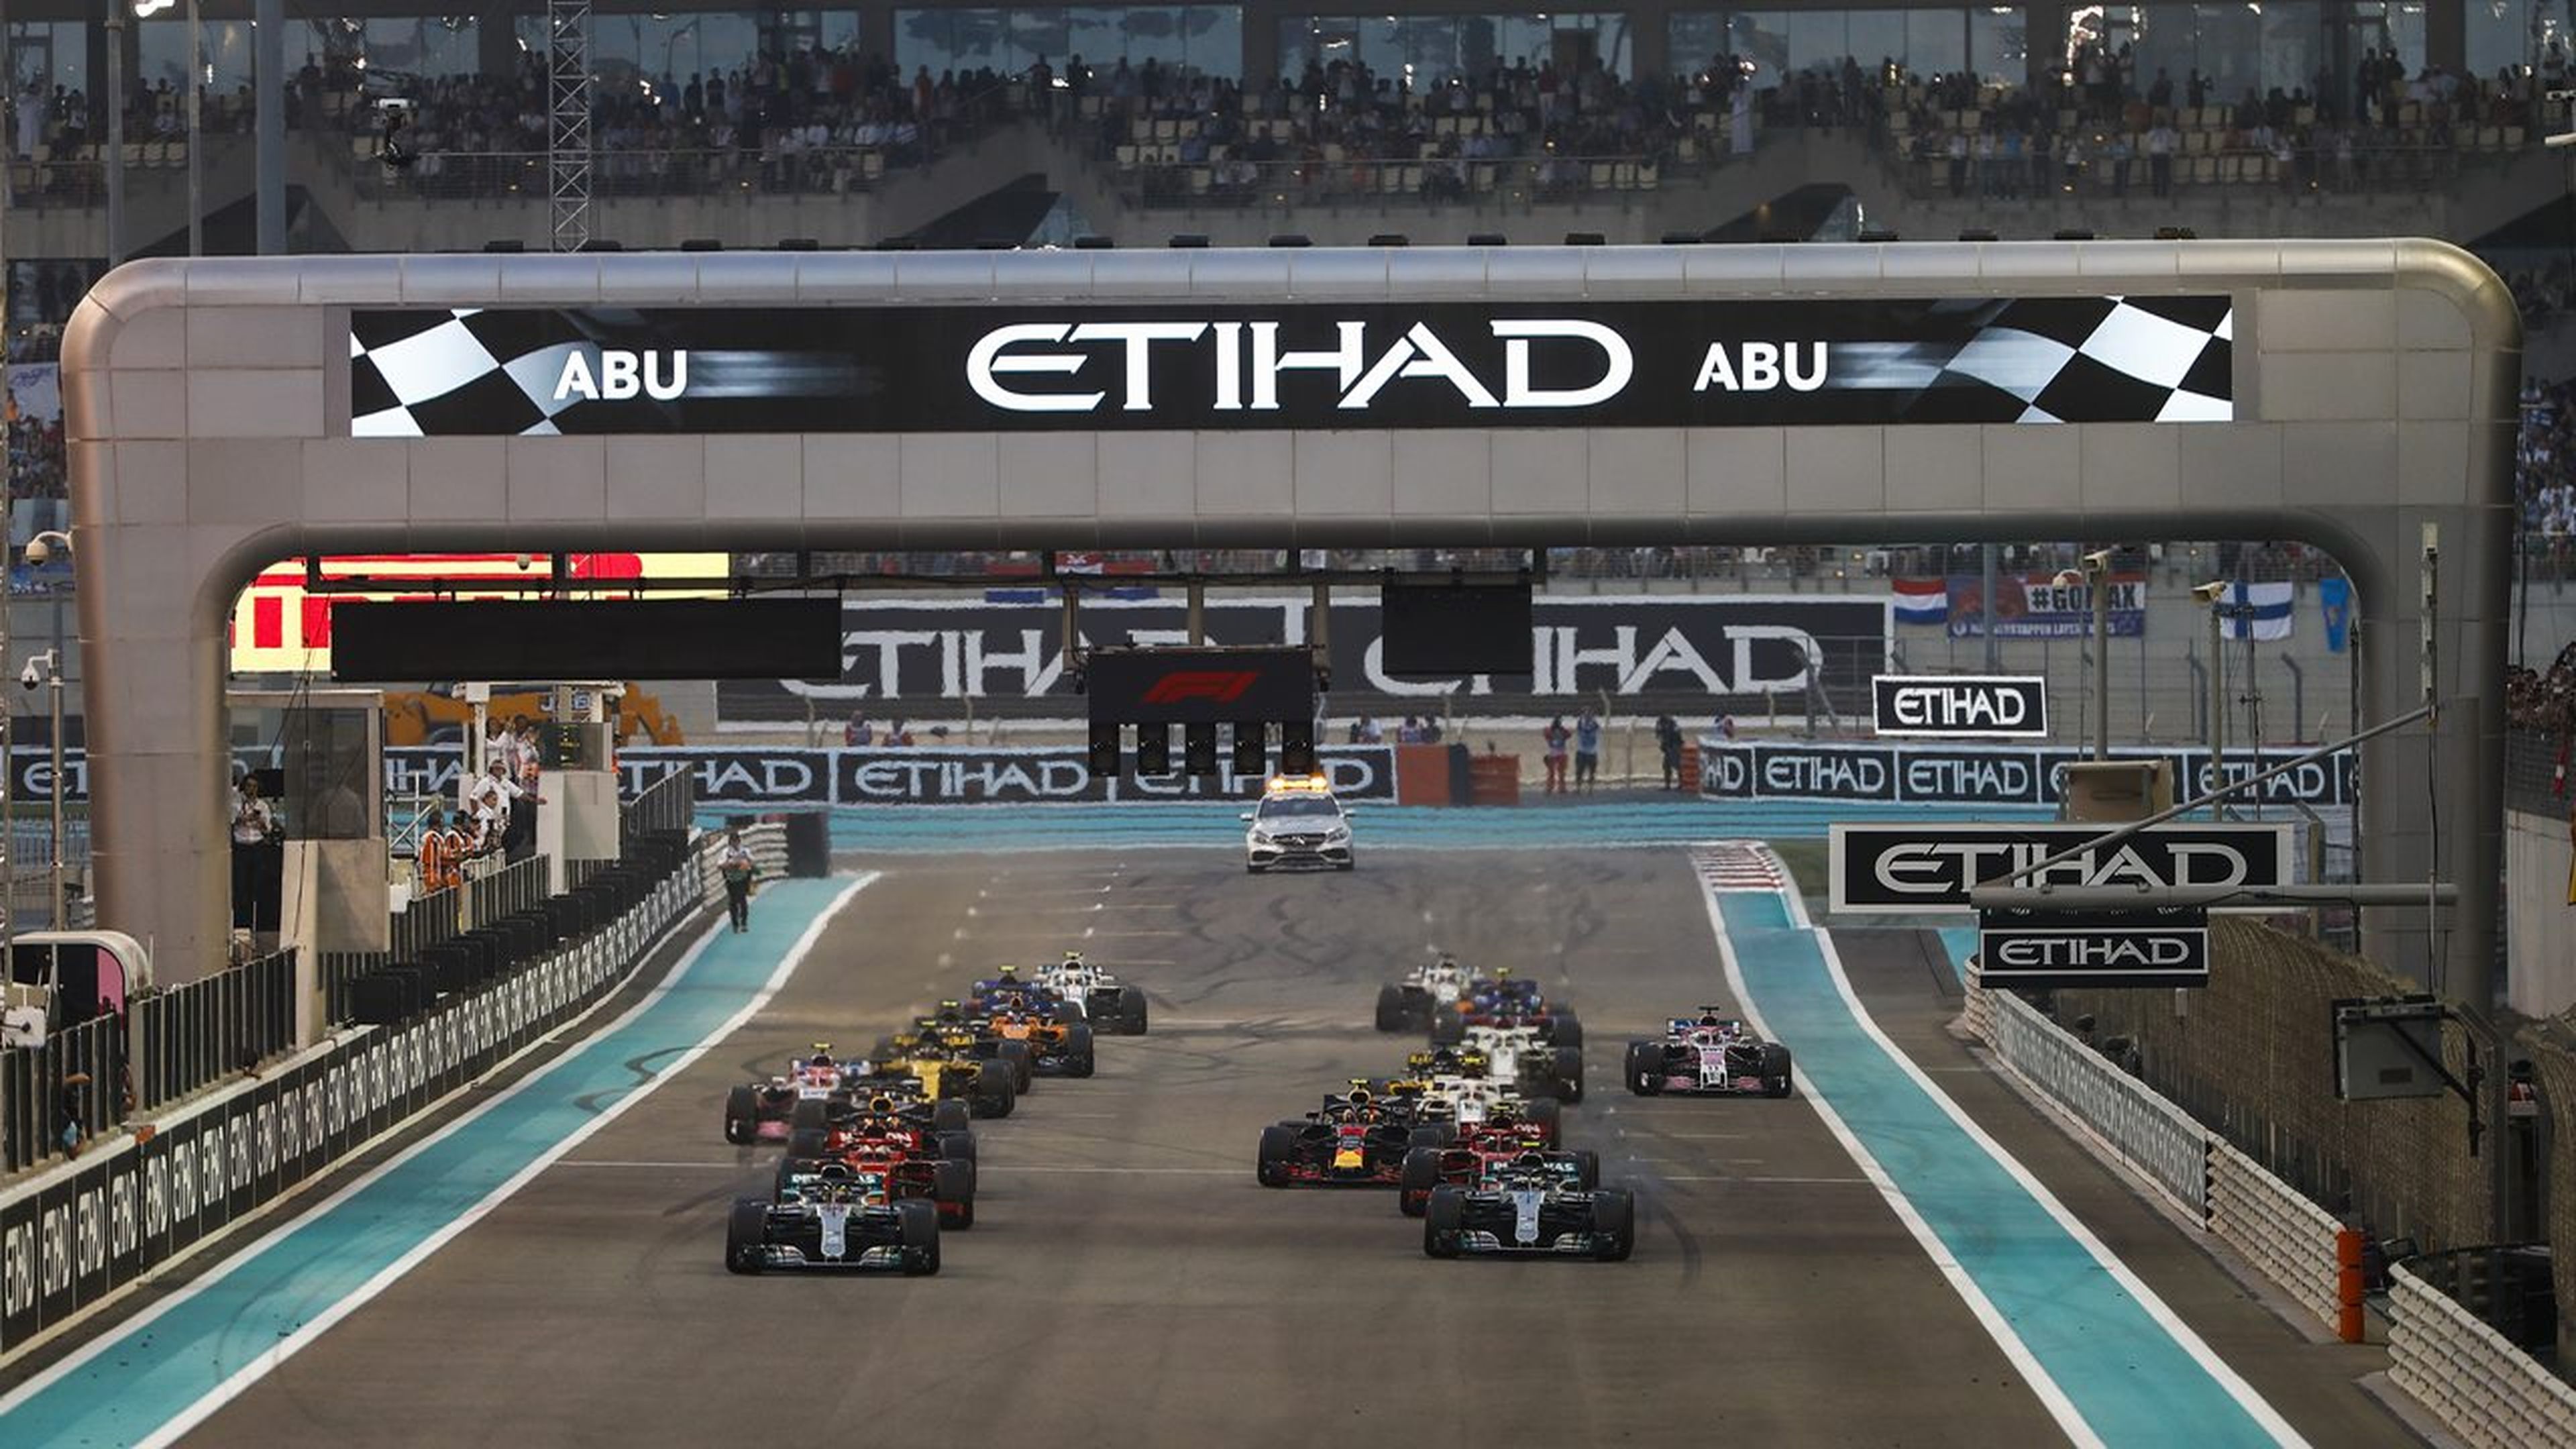 Salida del GP Abu Dhabi F1 2019